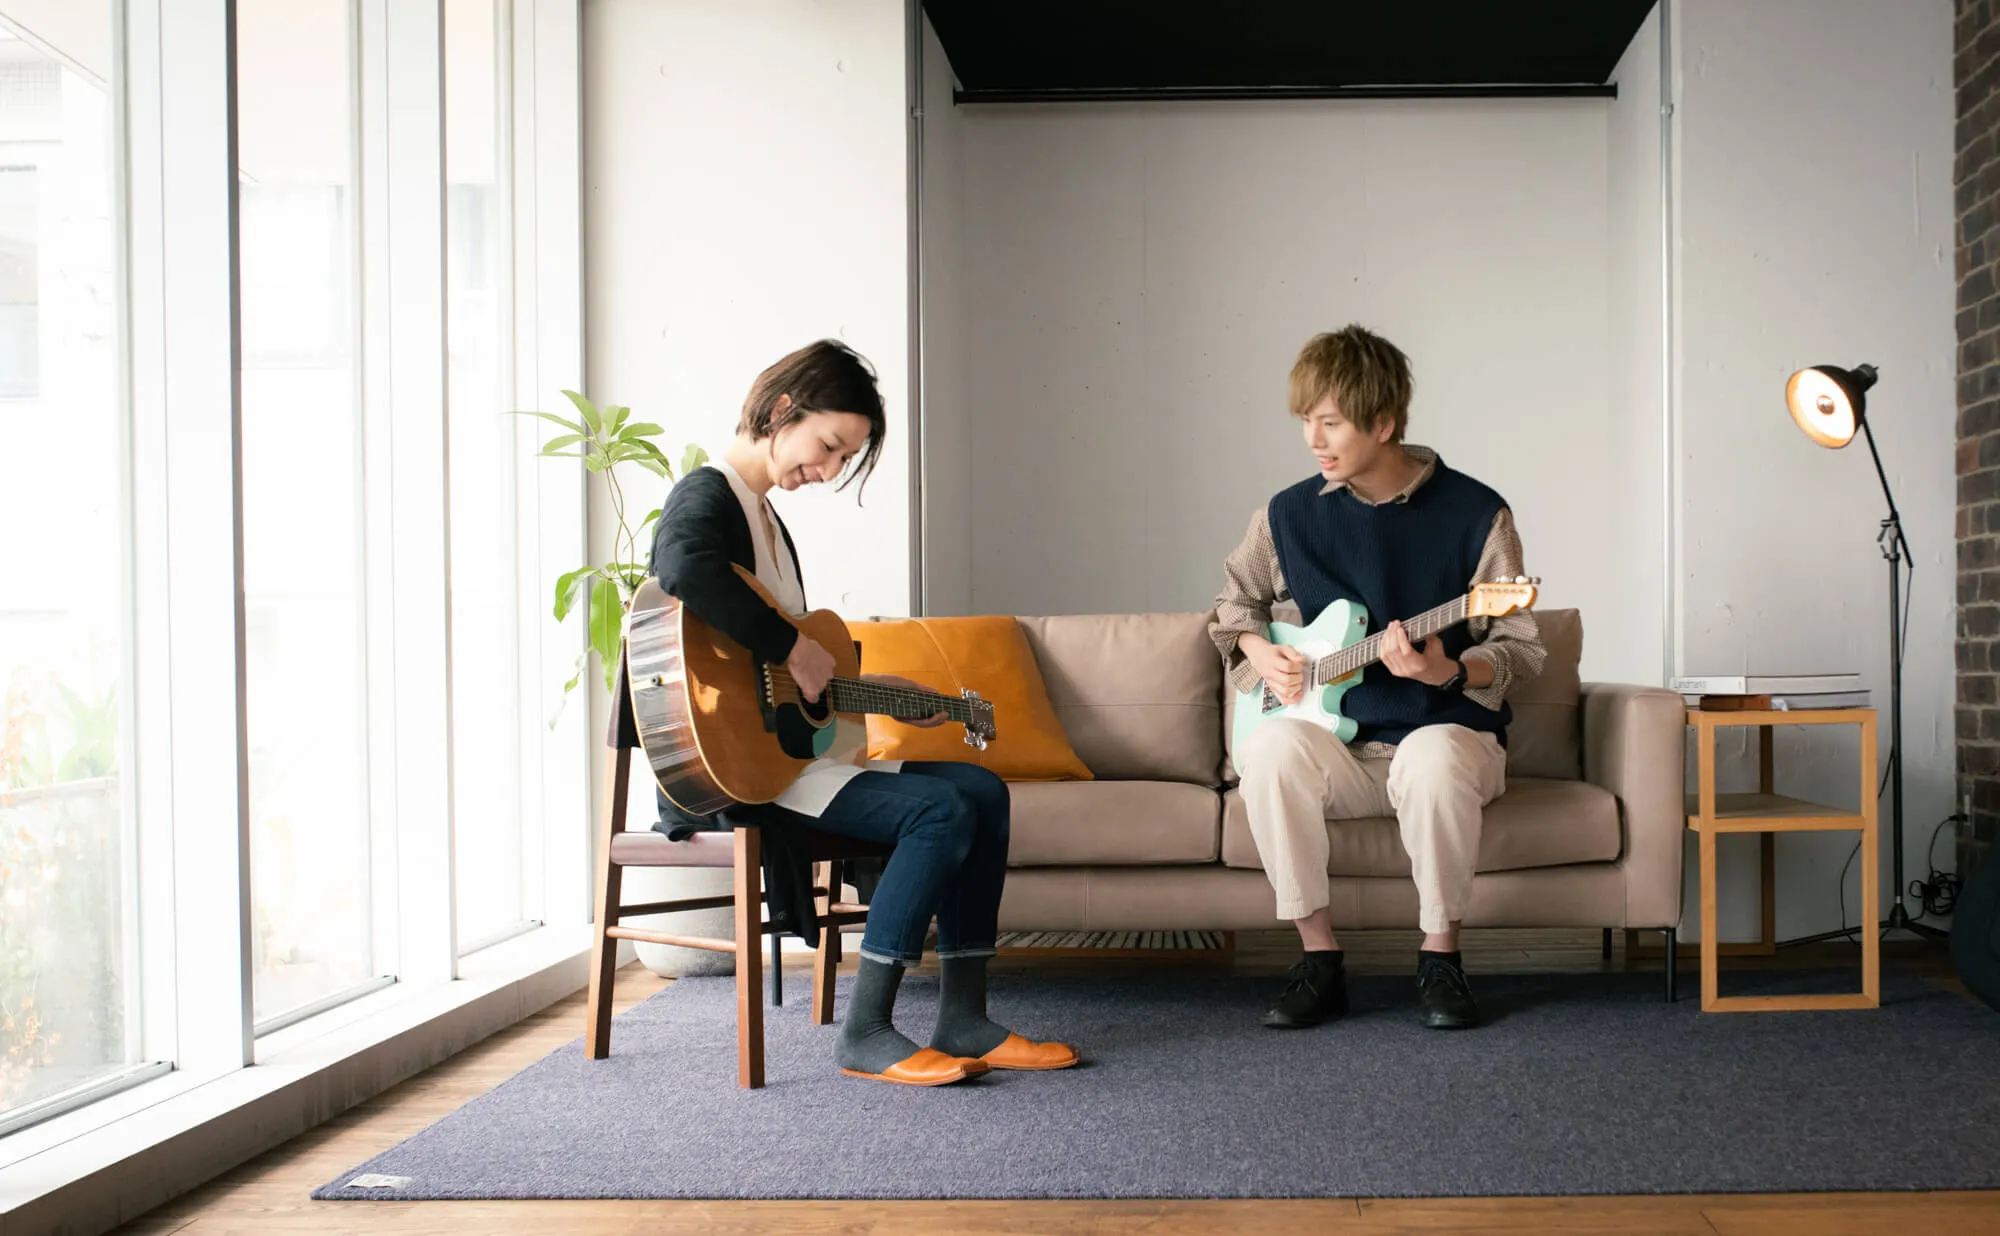 渋谷ギター教室 | 60分完全個人レッスンのエルギタースクール